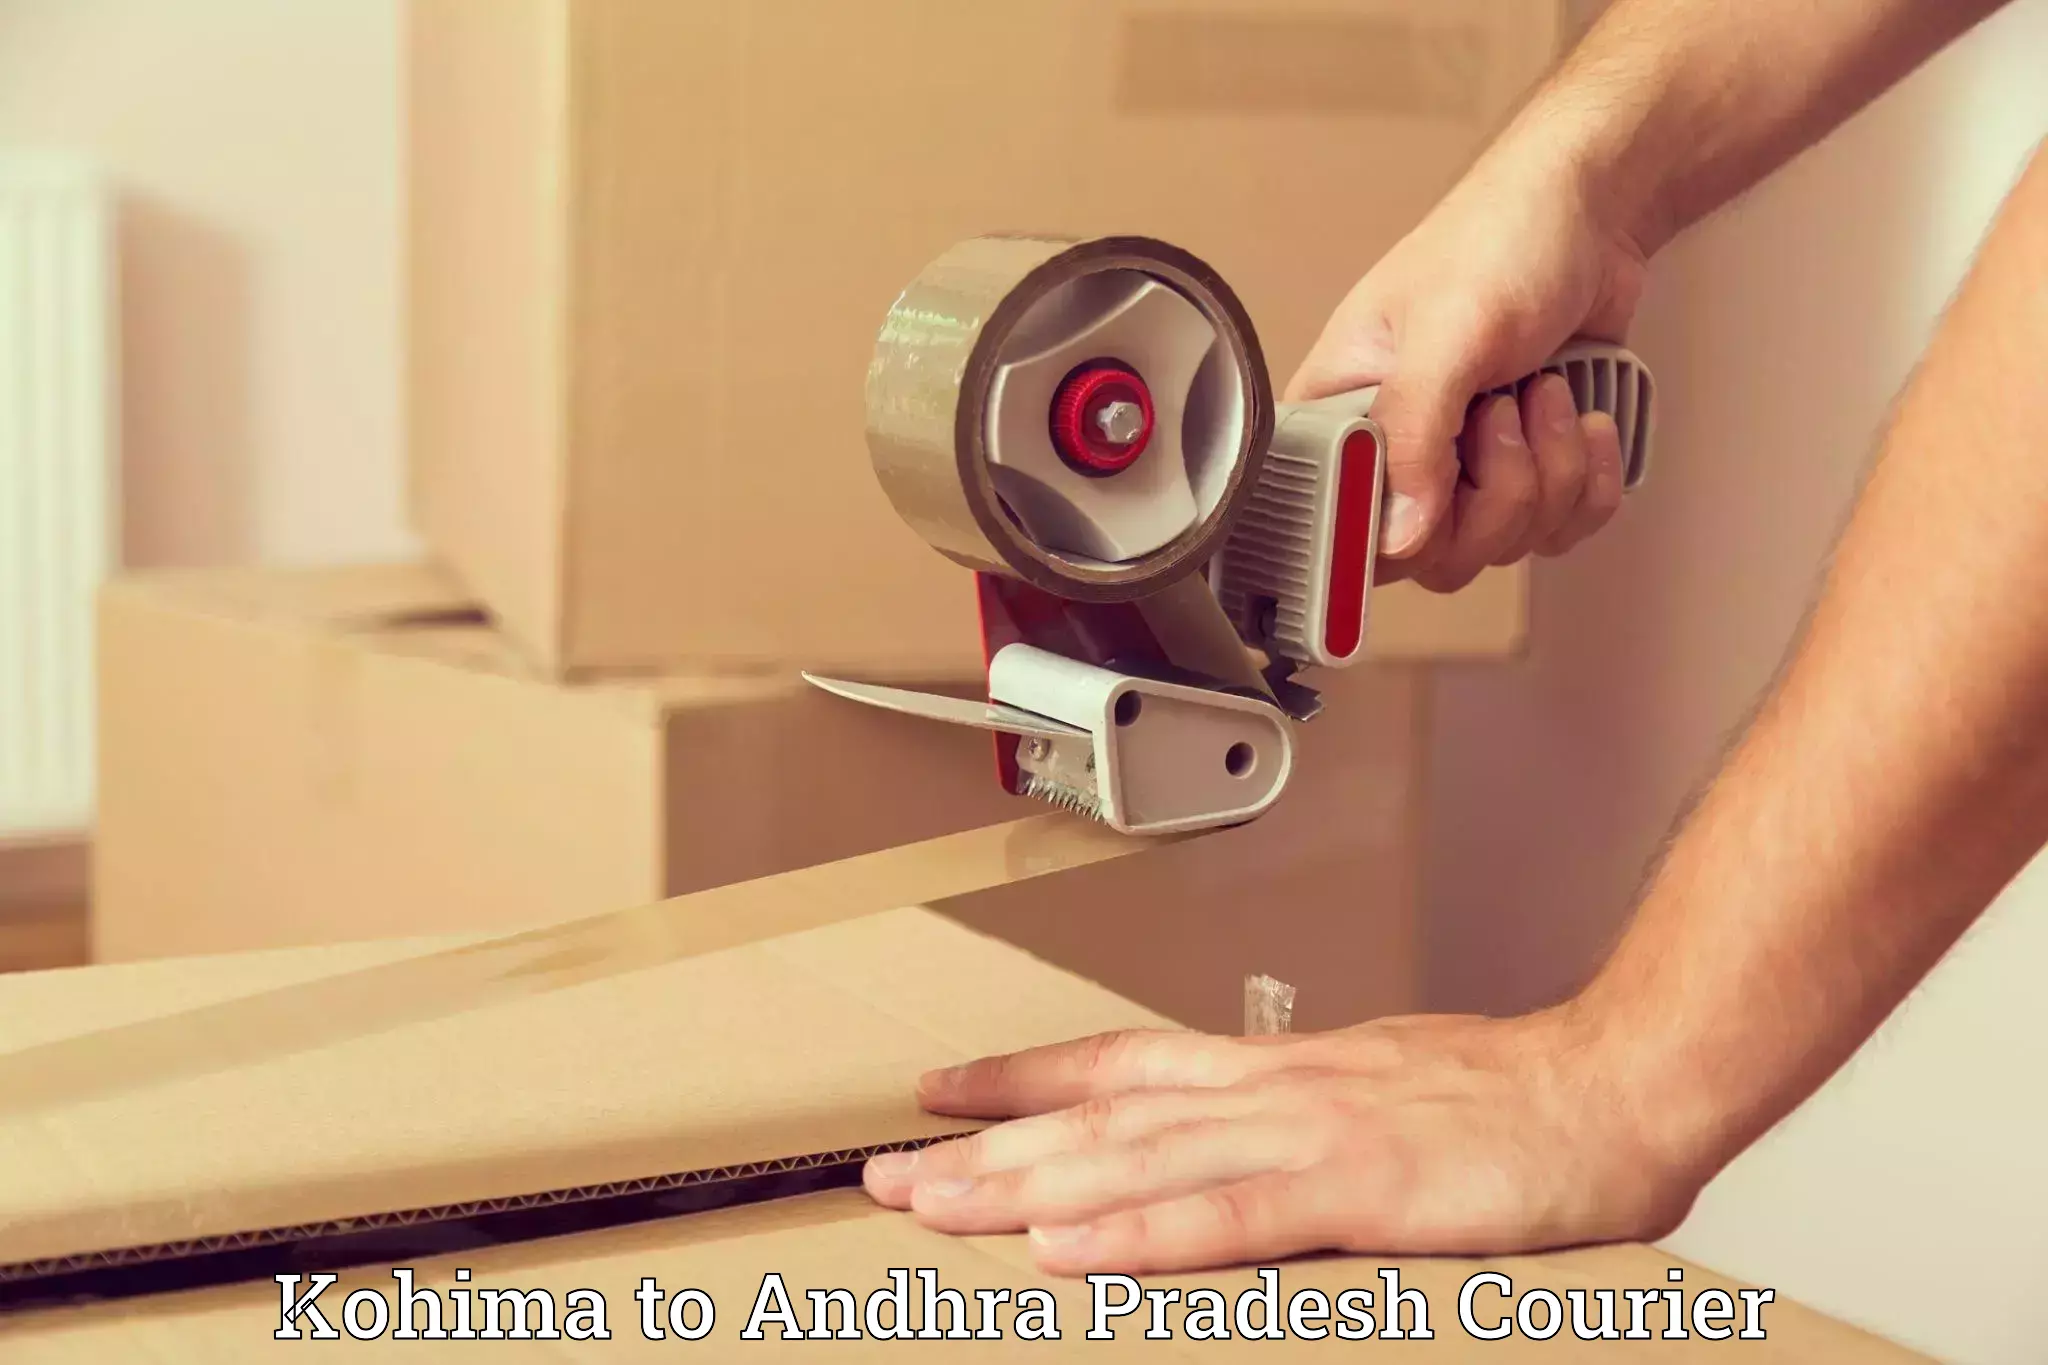 Furniture moving experts Kohima to Andhra Pradesh